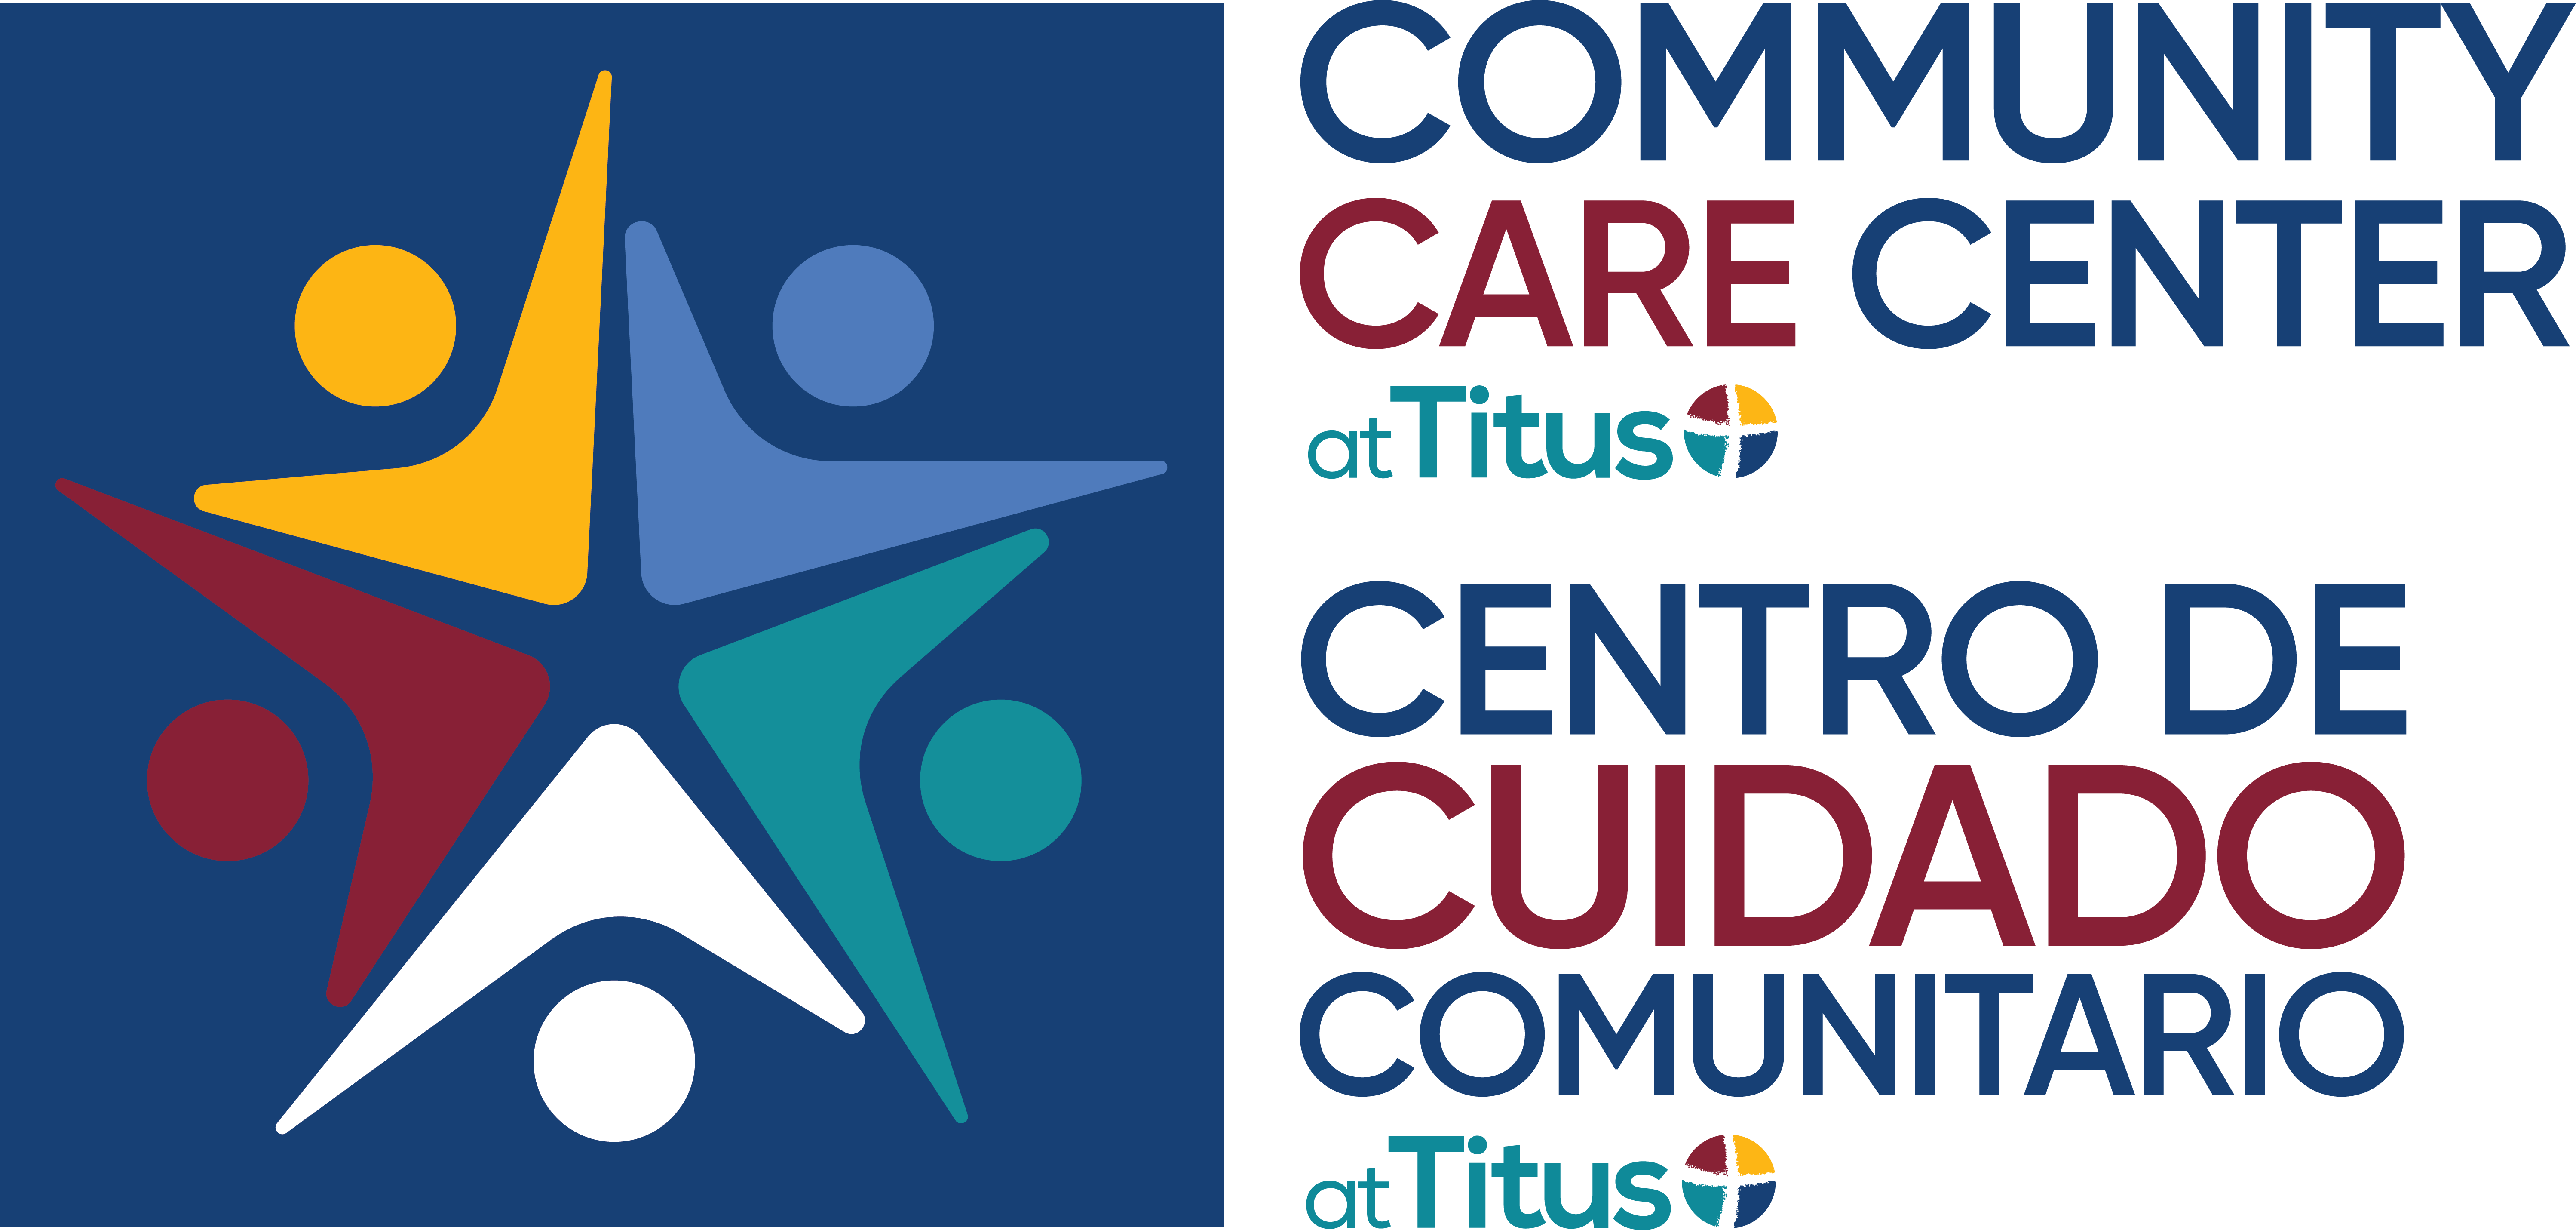 Community Care Center at Titus